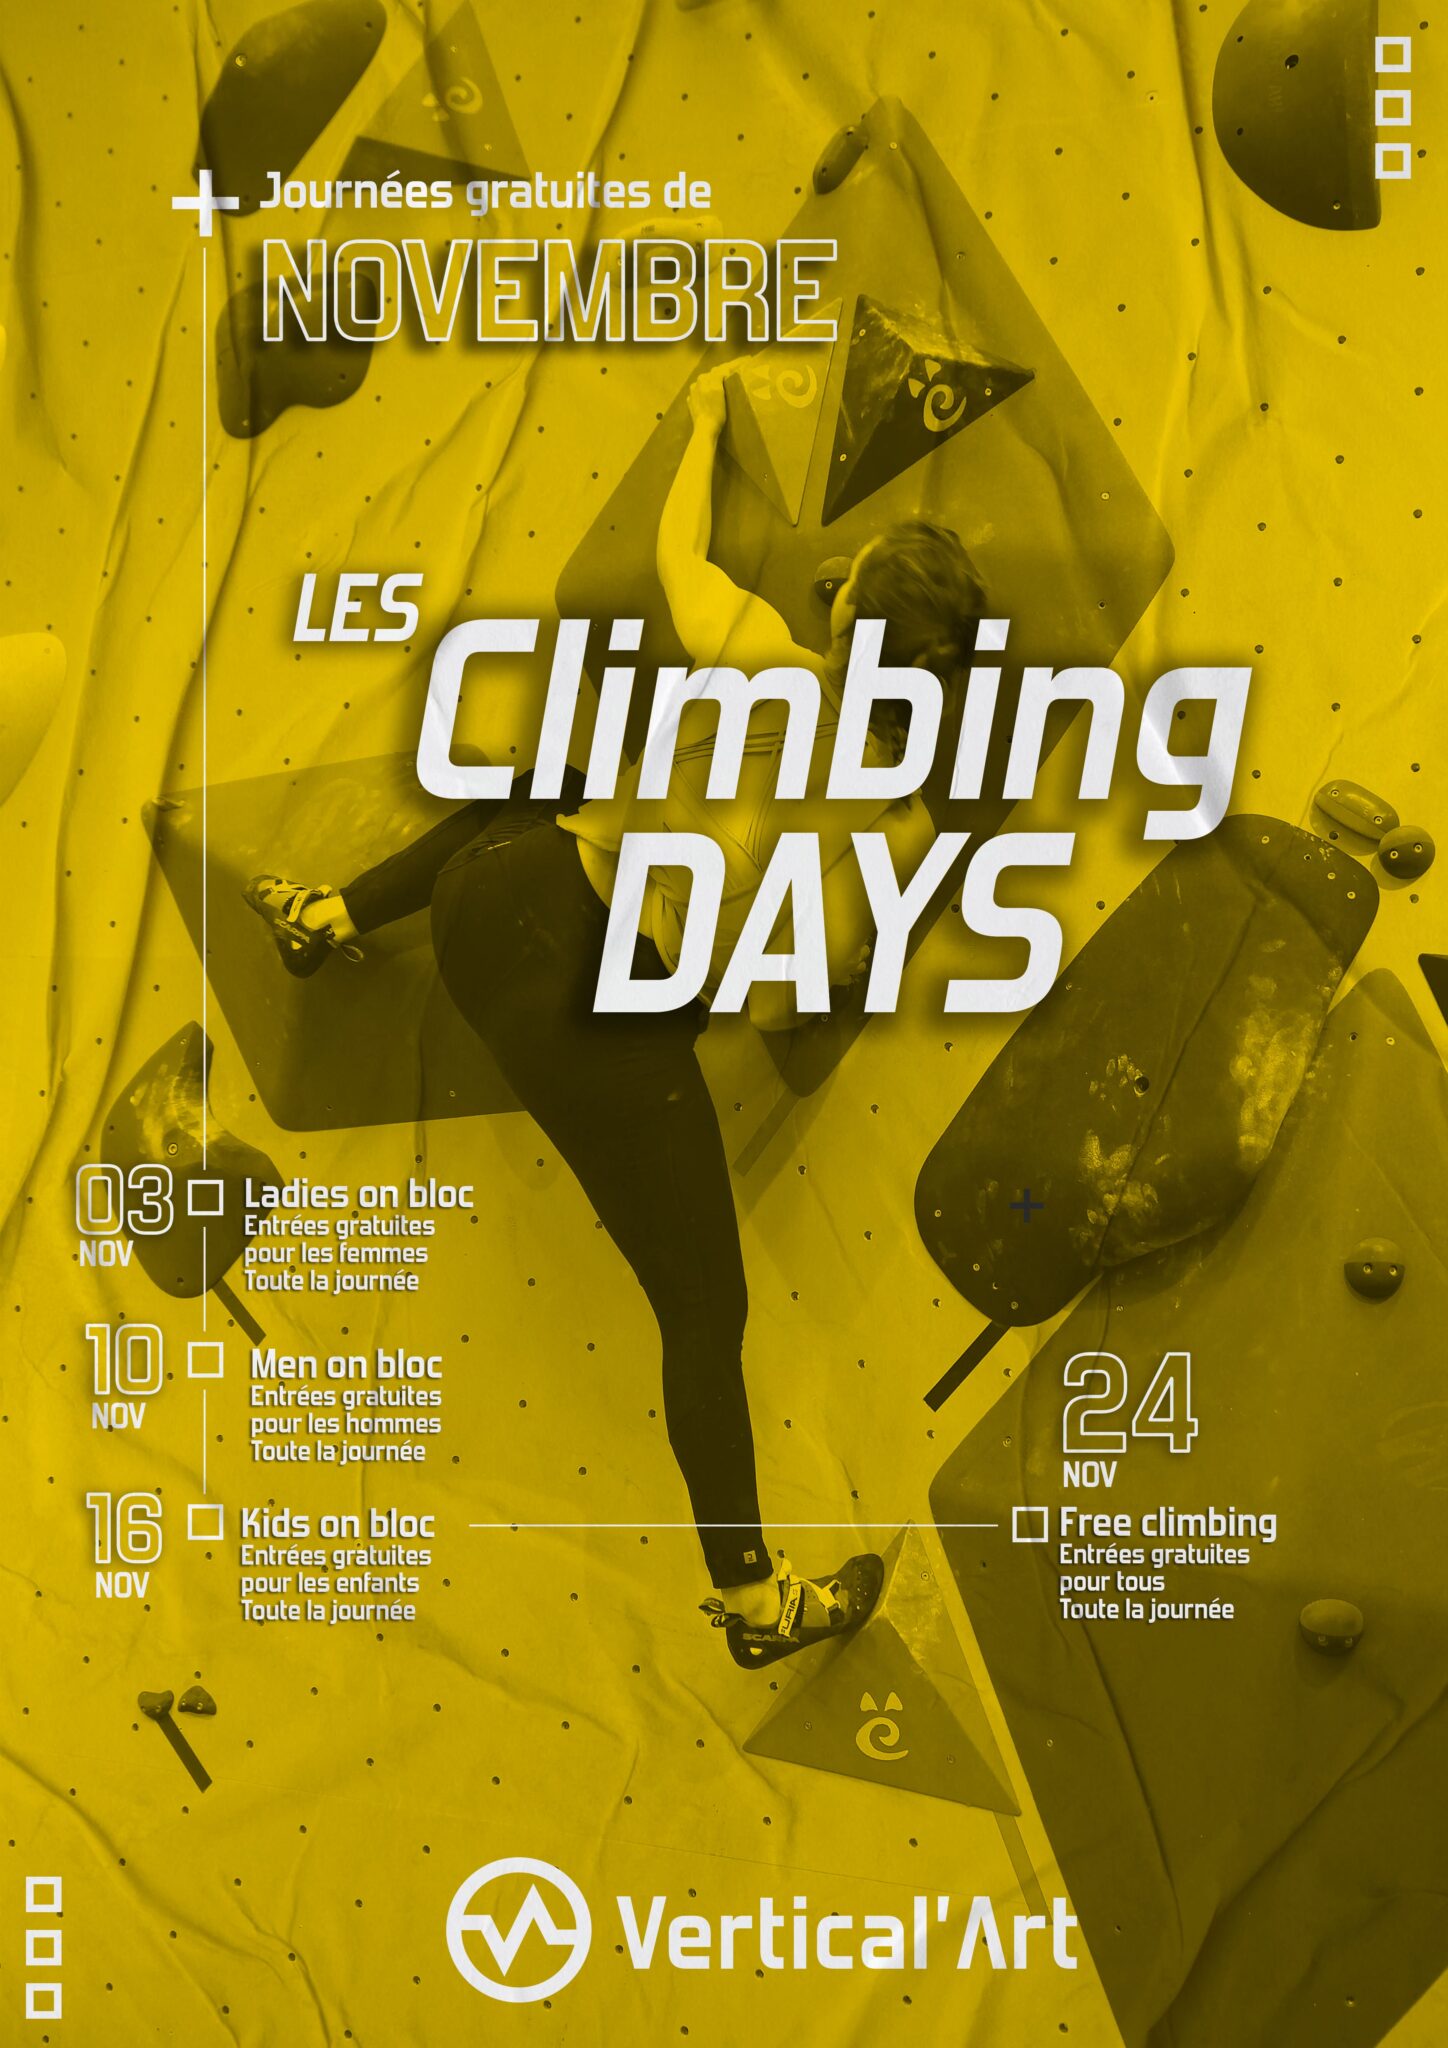 Climbing days à Vertical'Art Orléans Novembre 2022